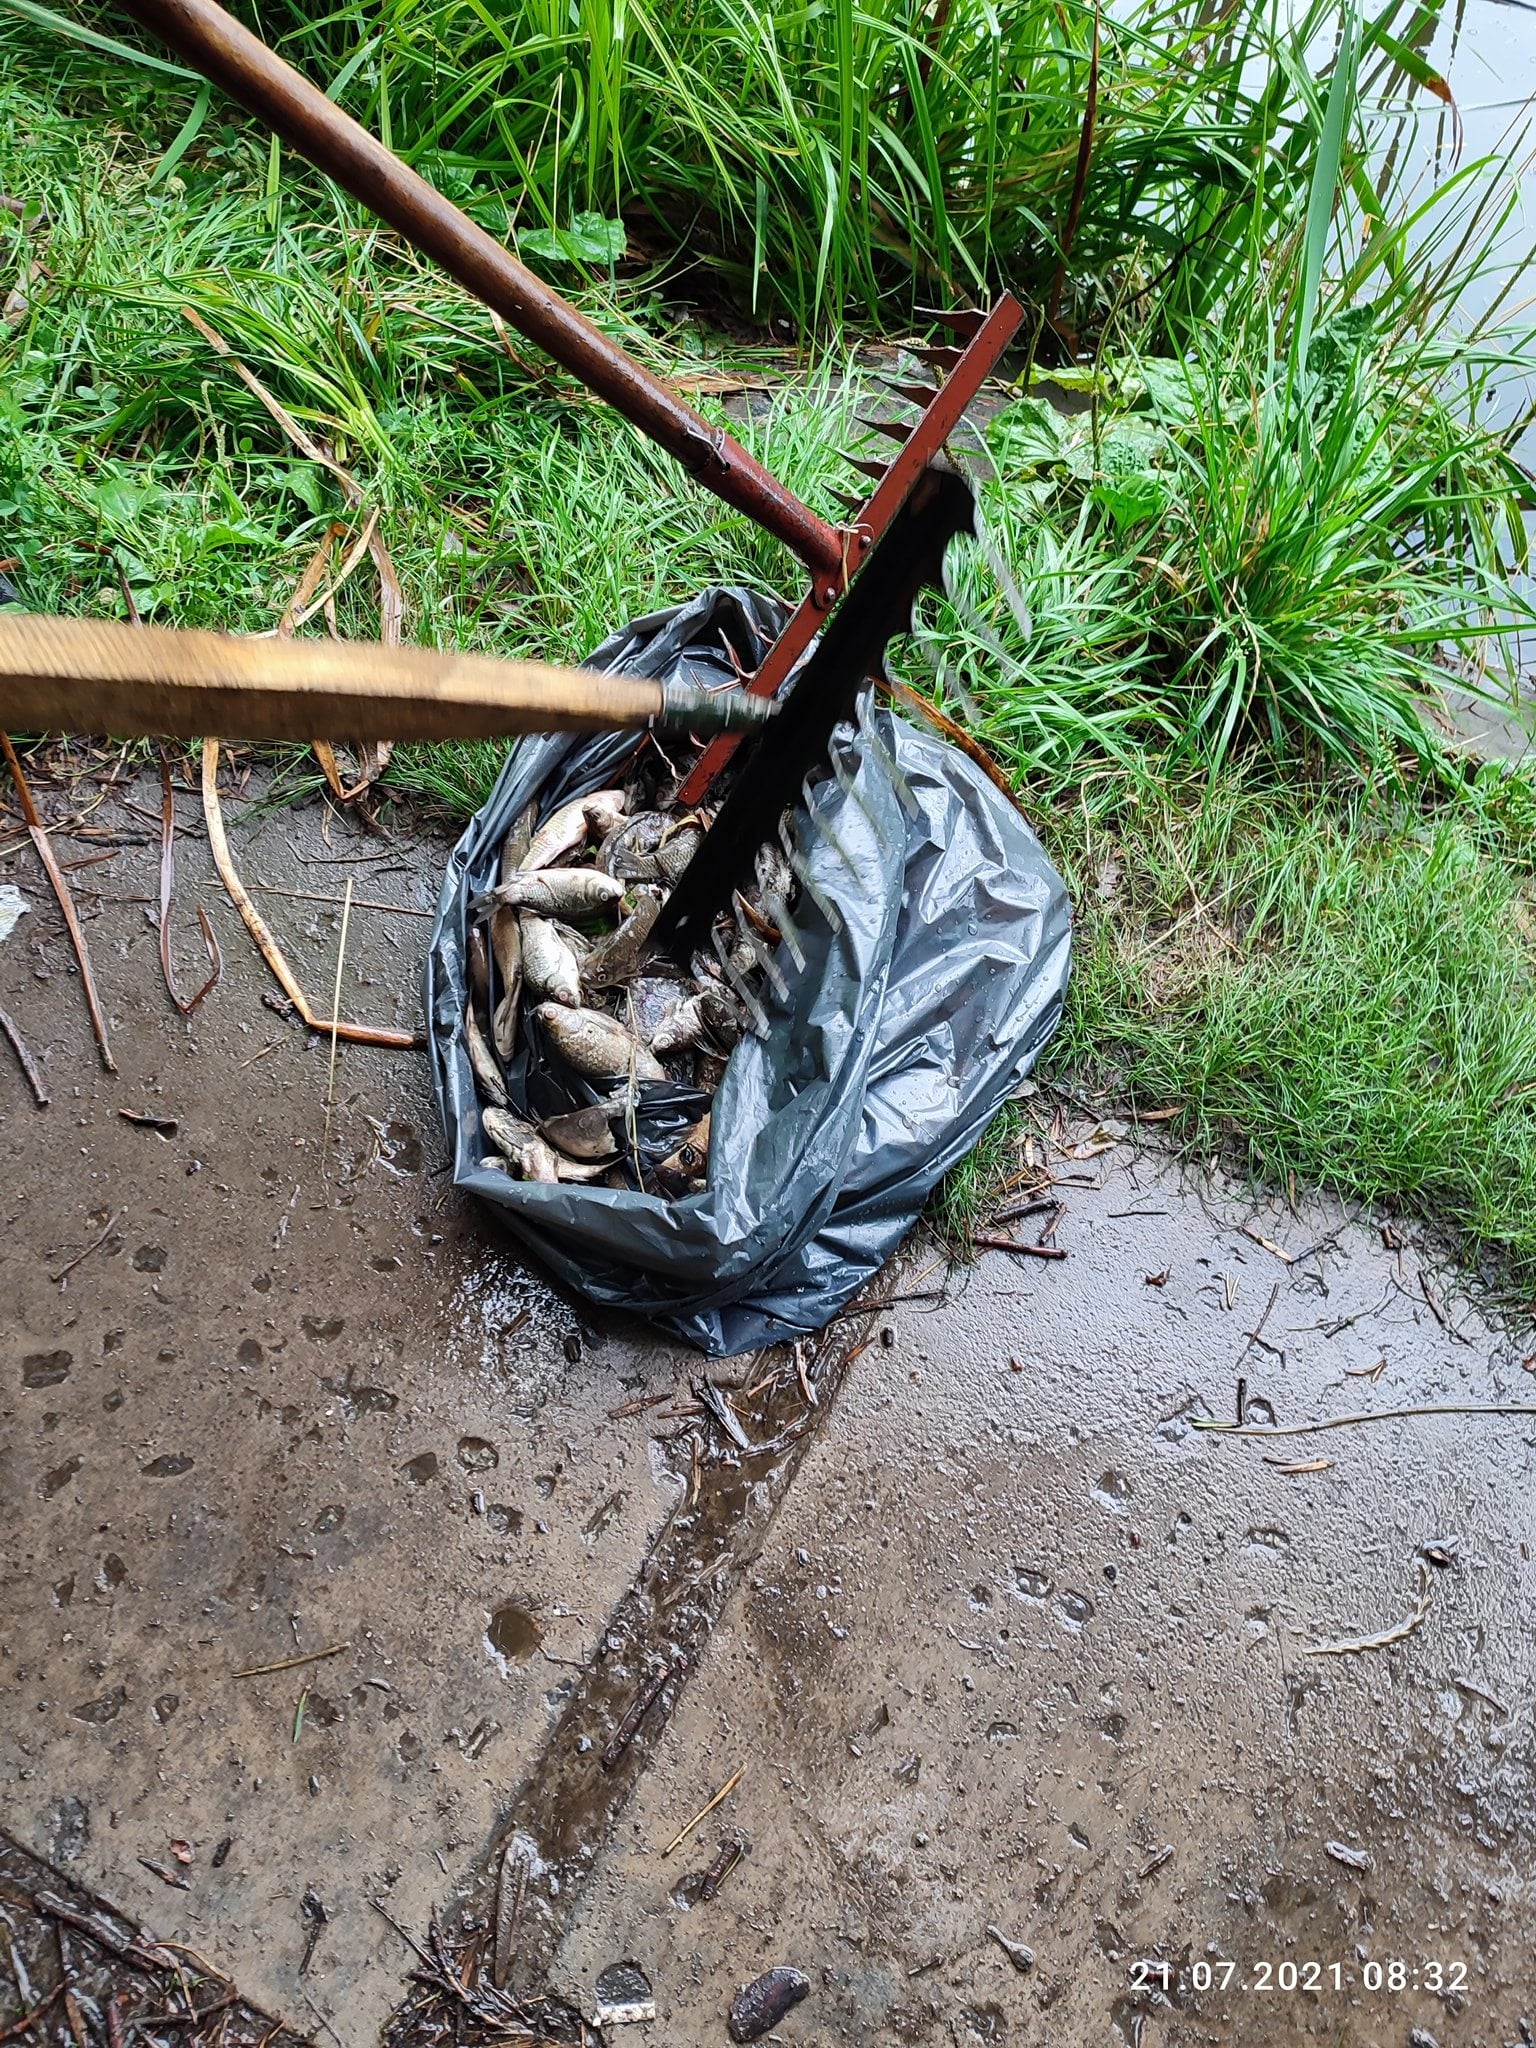 В Голосеевском парке в Киеве из-за высокого содержания ртути в воде массово погибли утки и рыбы